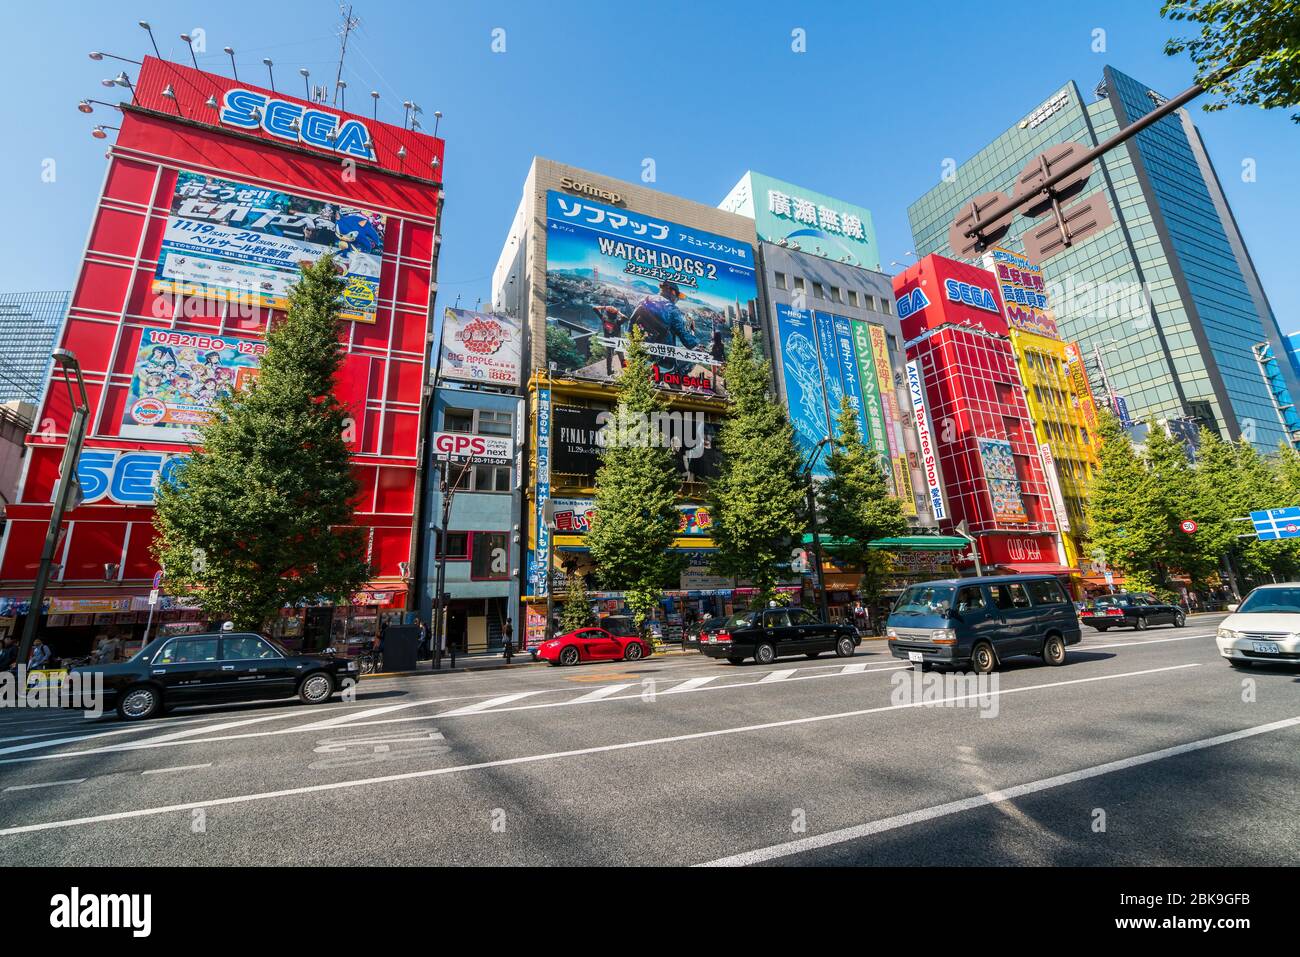 Khám phá khu phố điện tử Akihabara - Thánh địa dành cho giới Otaku ở Nhật  Bản